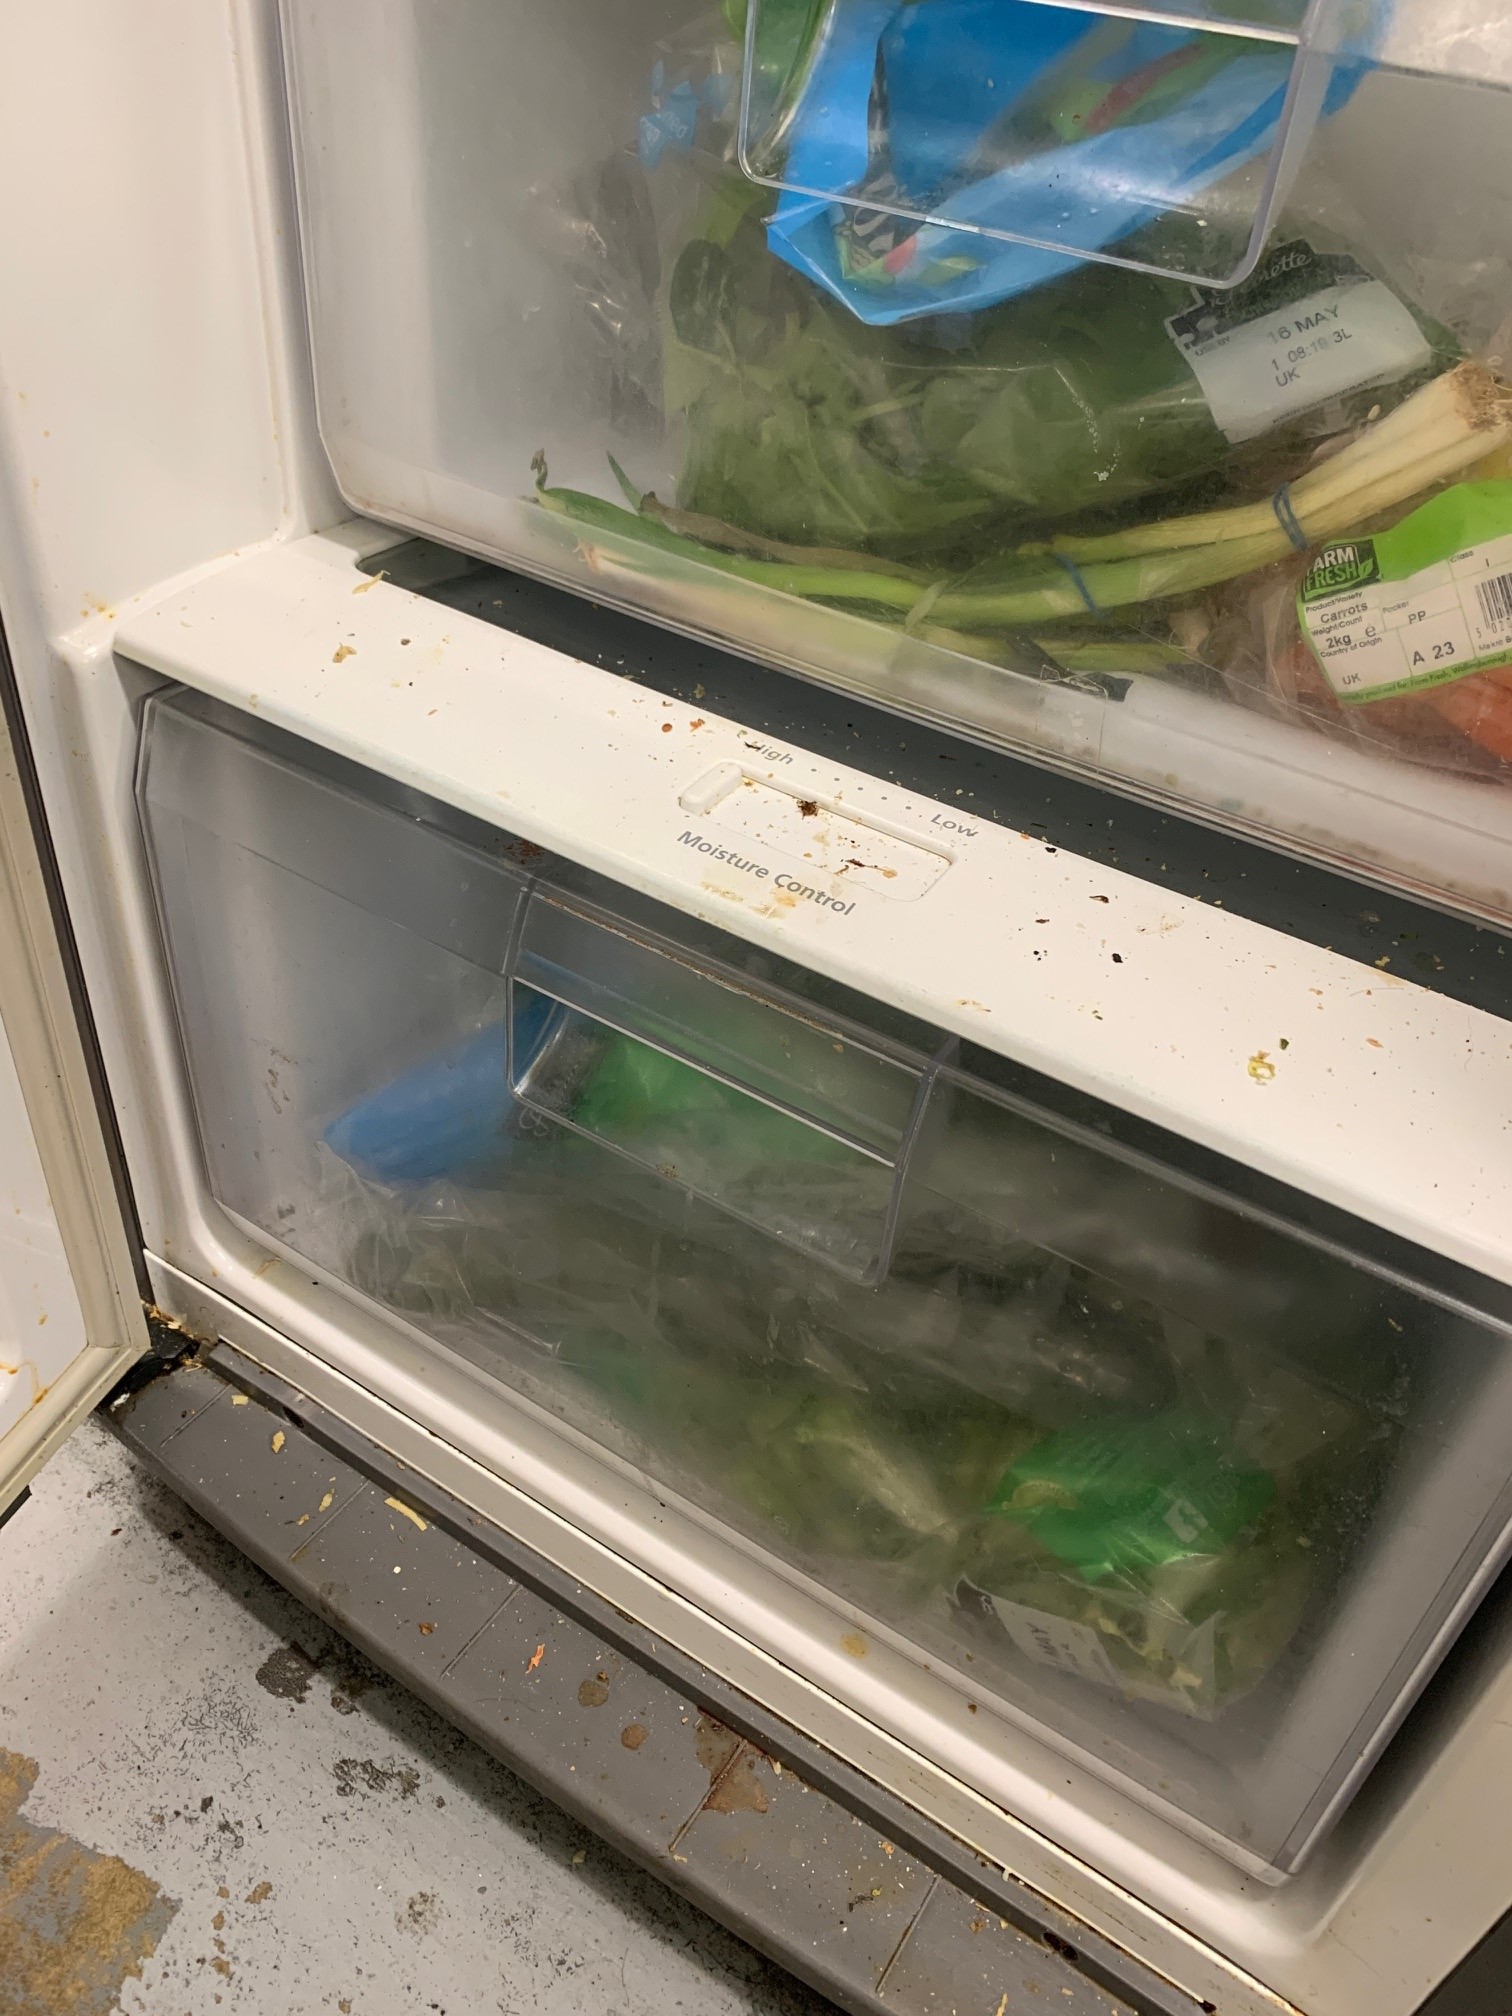 Oblios evidence, dirty fridge